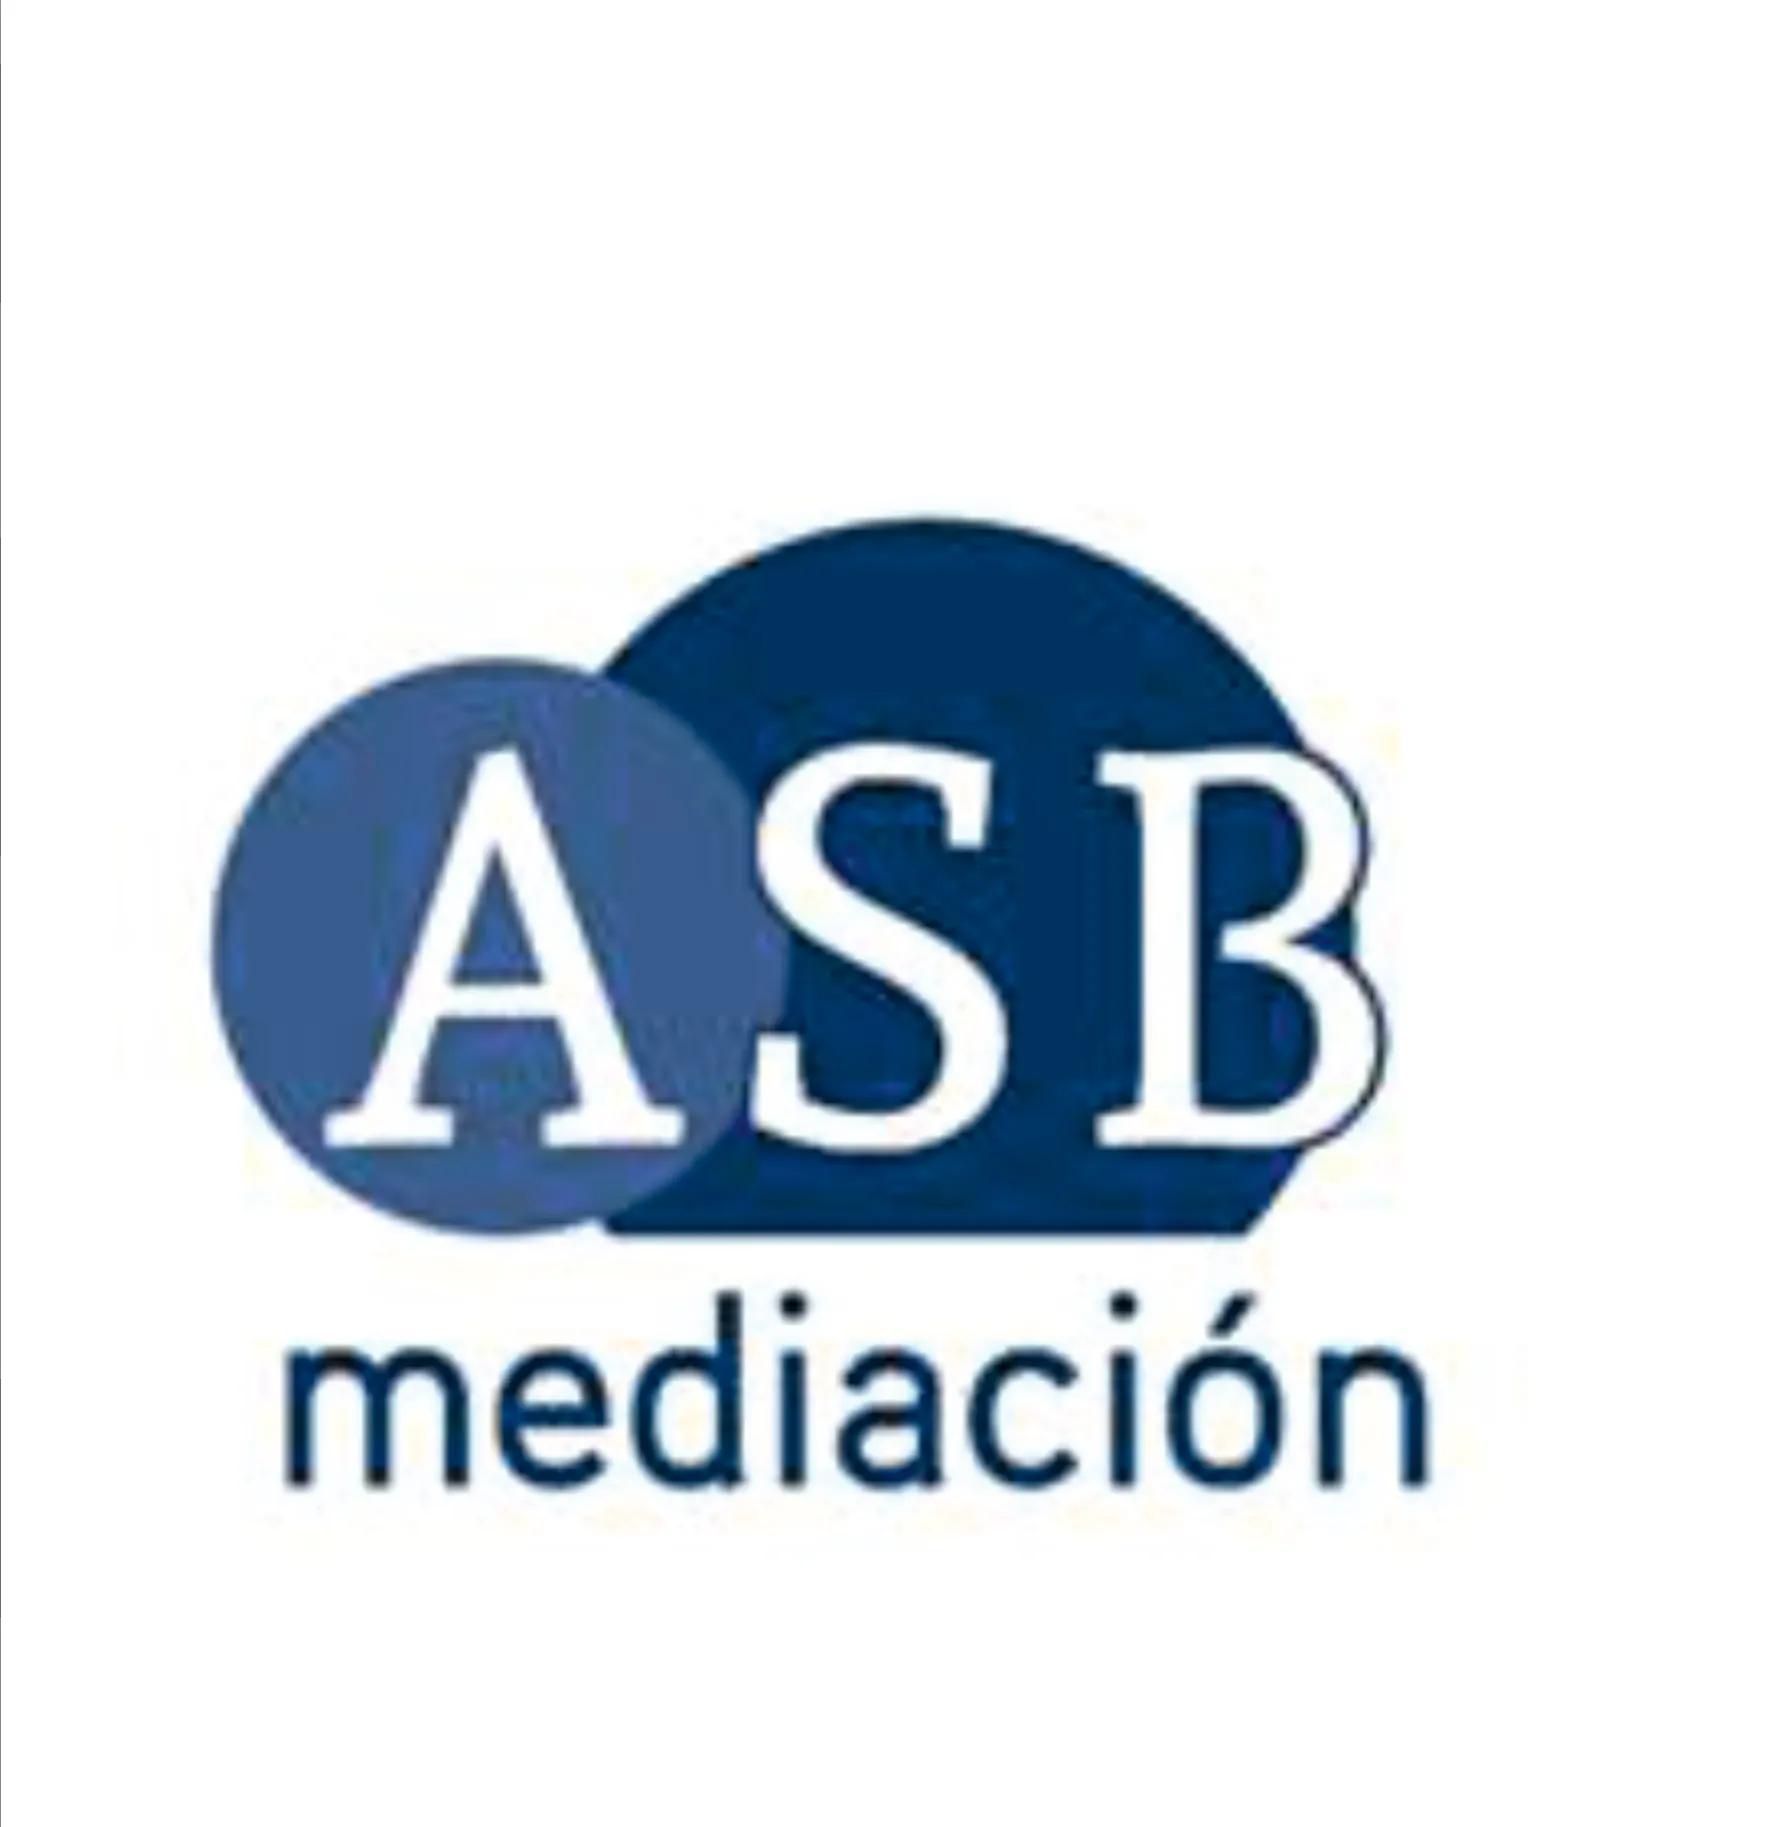 asb mediacion.png